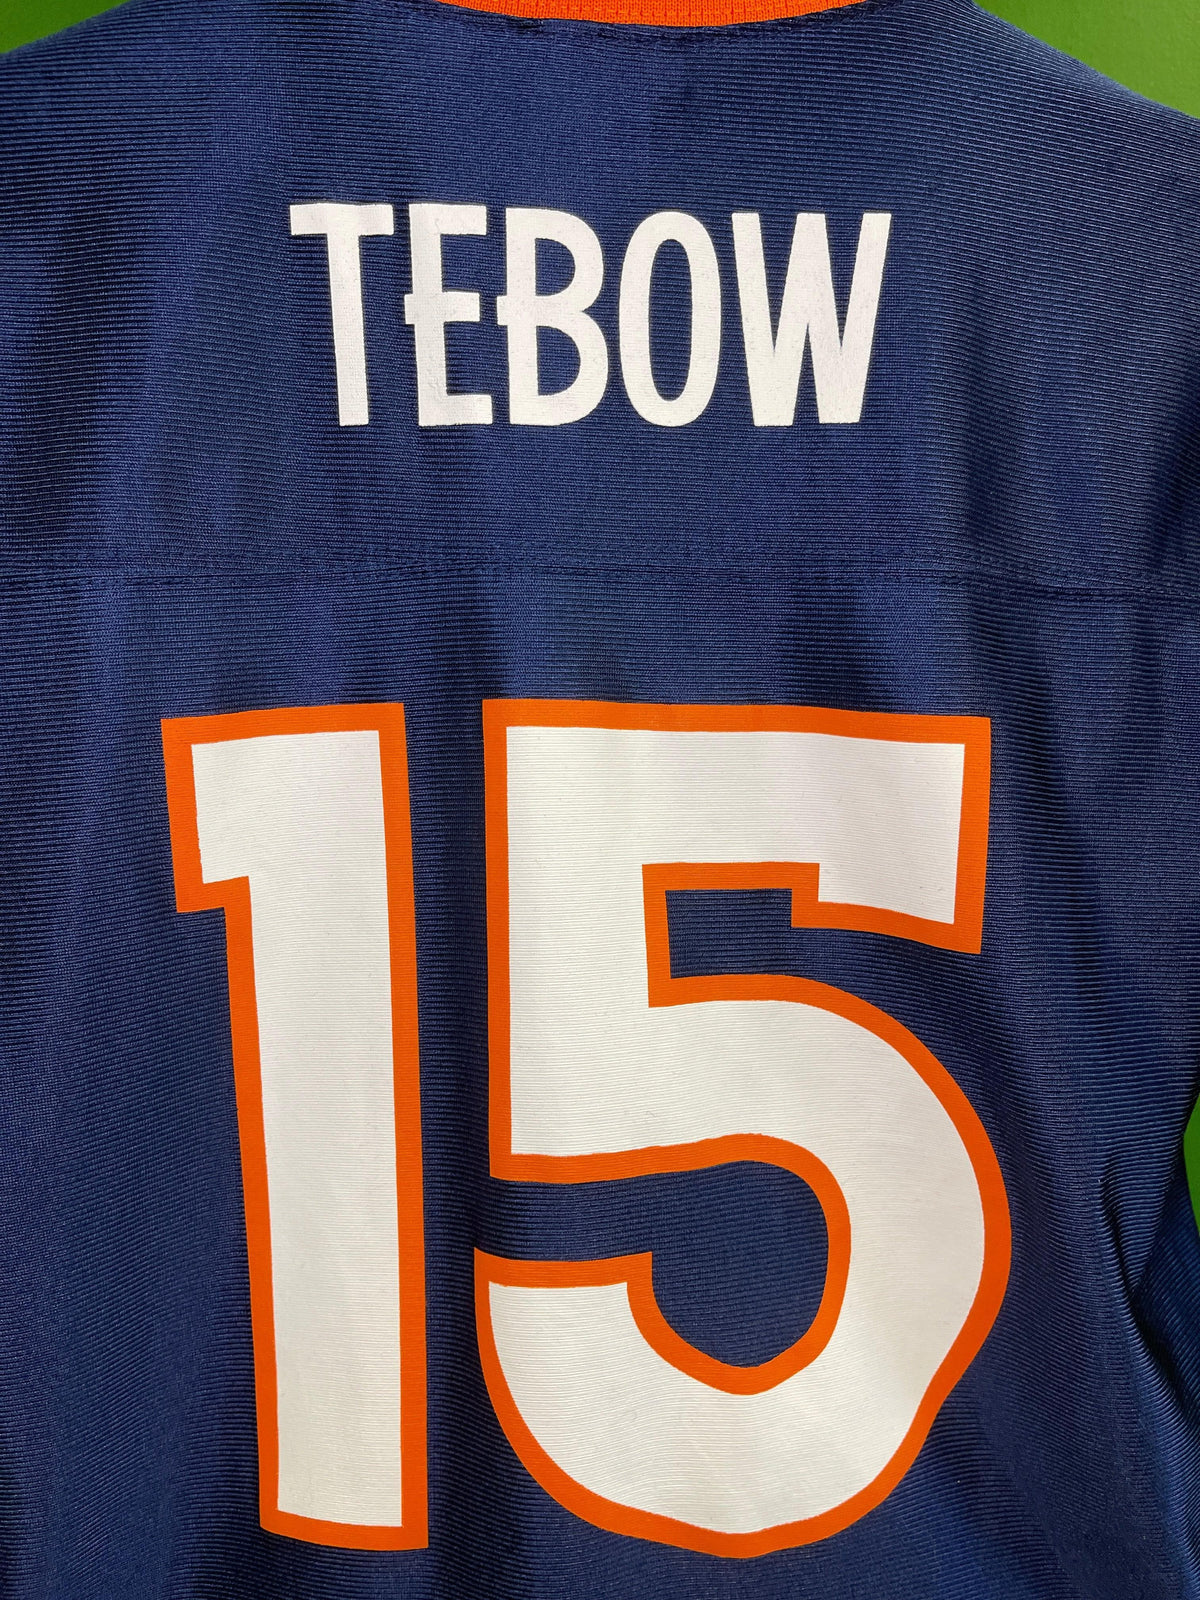 NFL Denver Broncos Tim Tebow #15 Jersey Youth Large 14-16